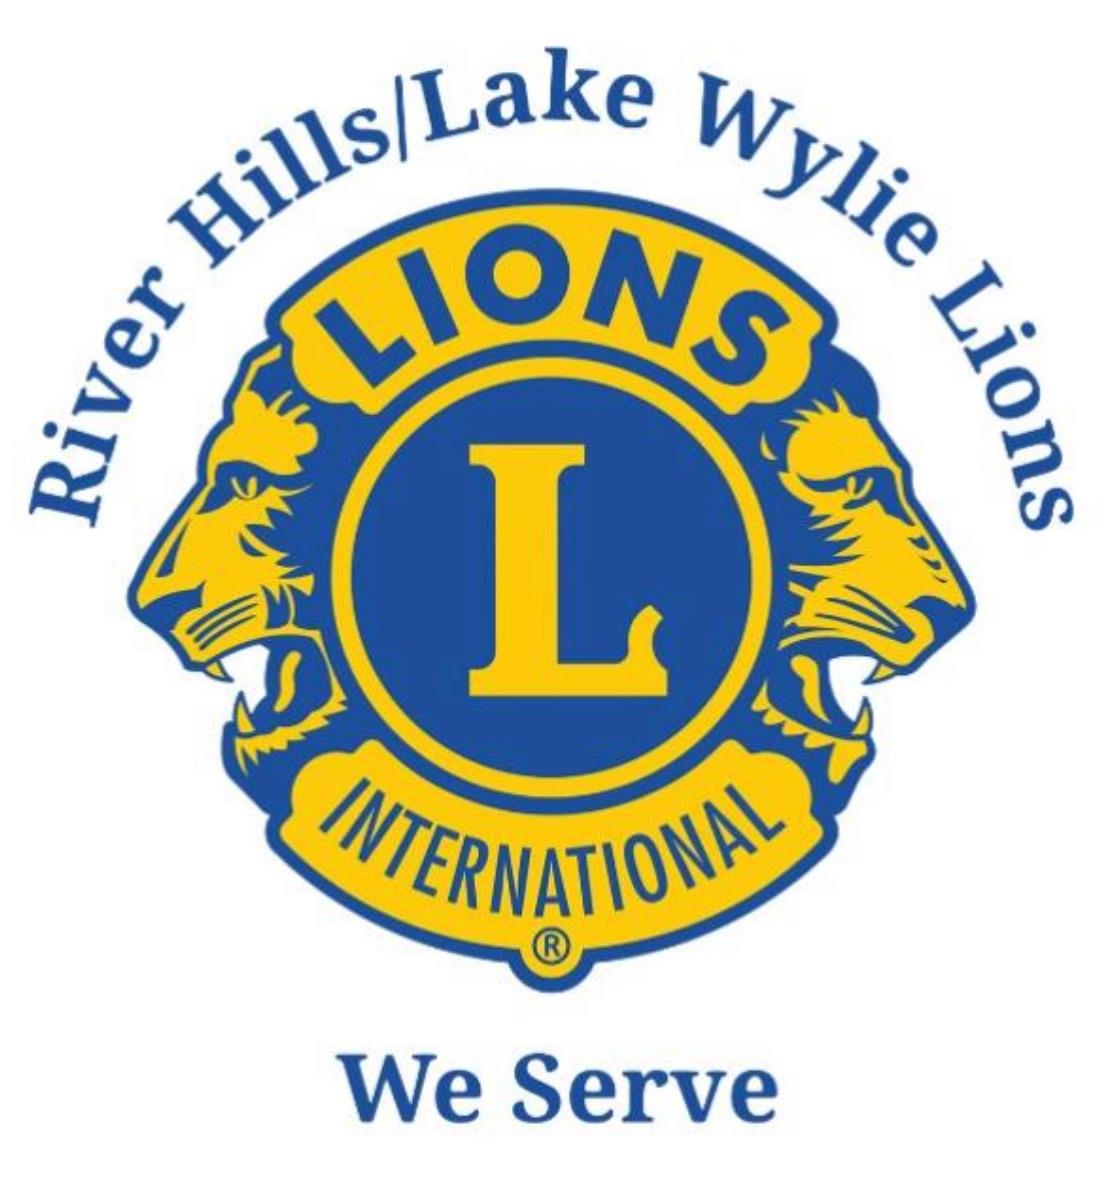 River Hills Lake Wylie  logo